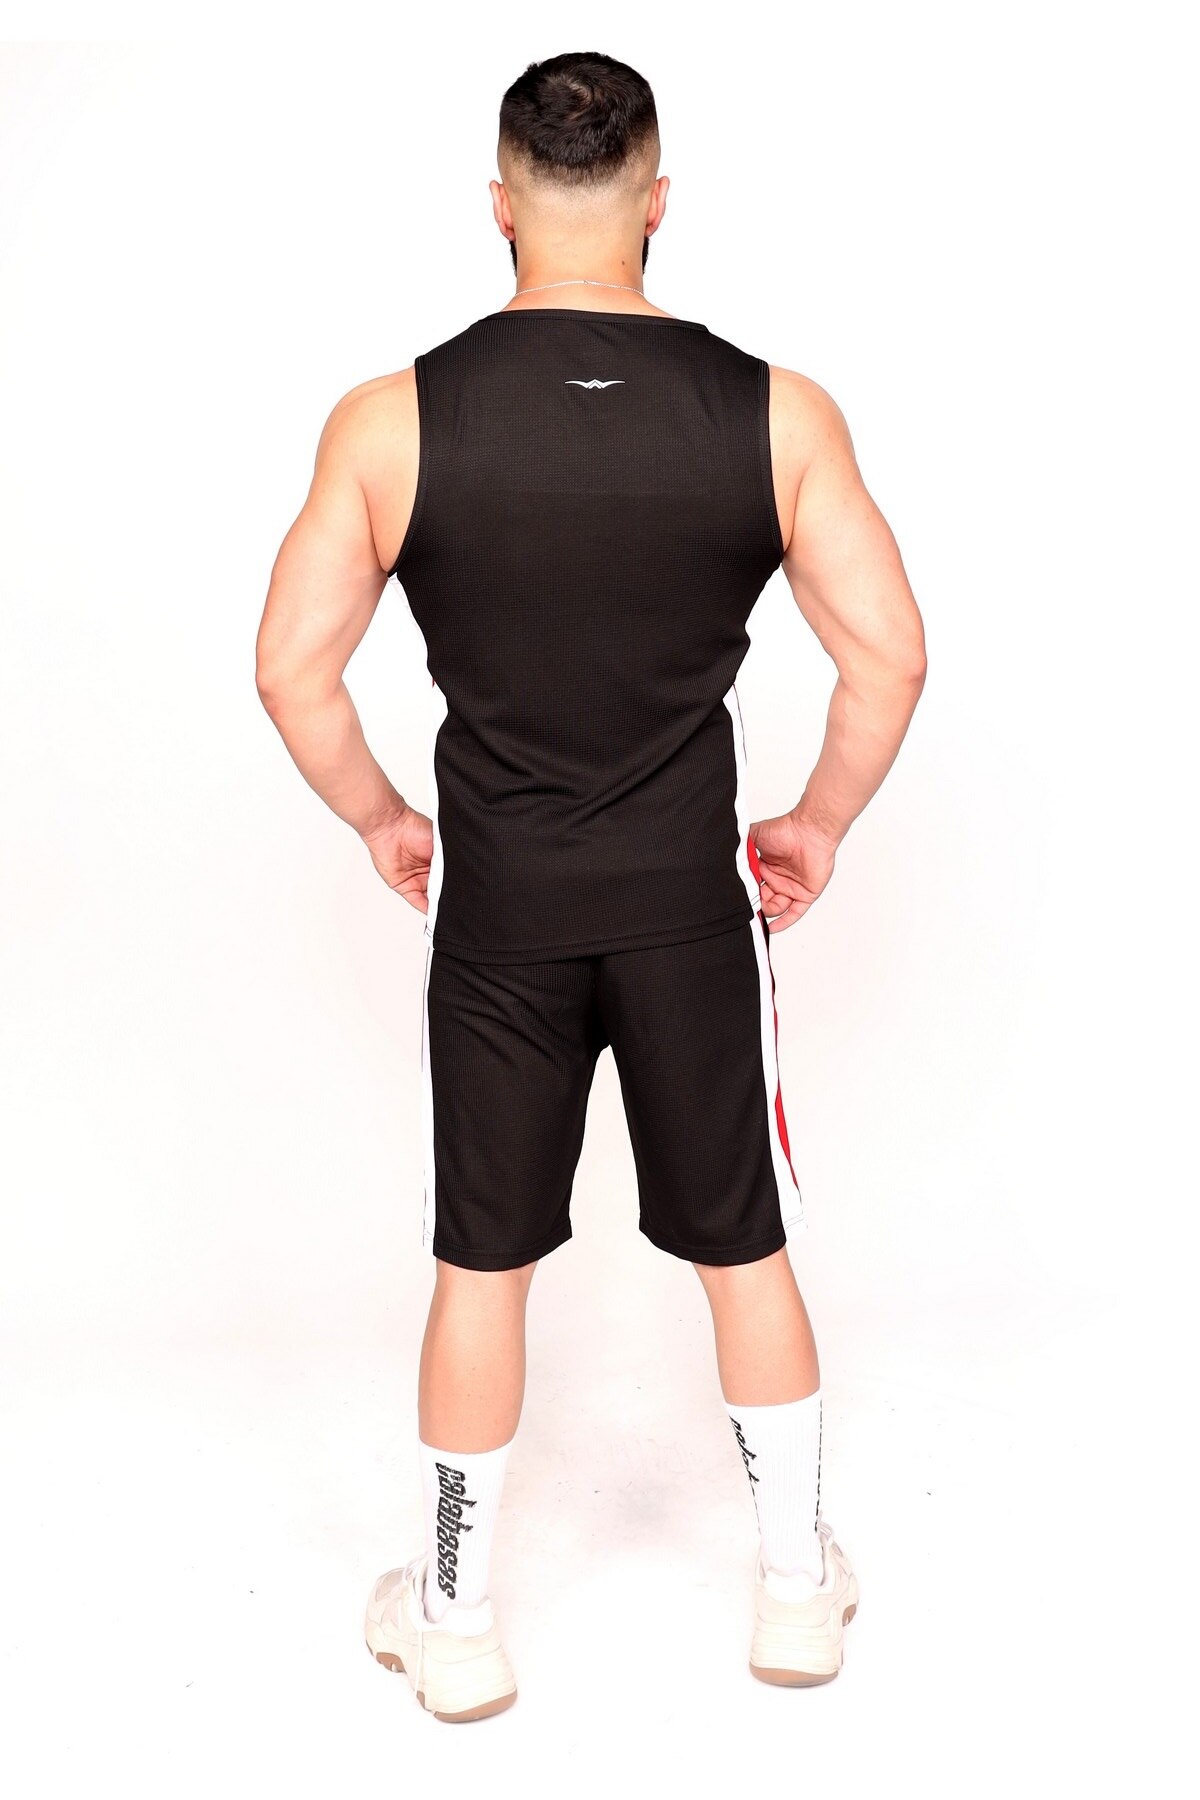 Sportshold åndbar shorts & undertrøje sort